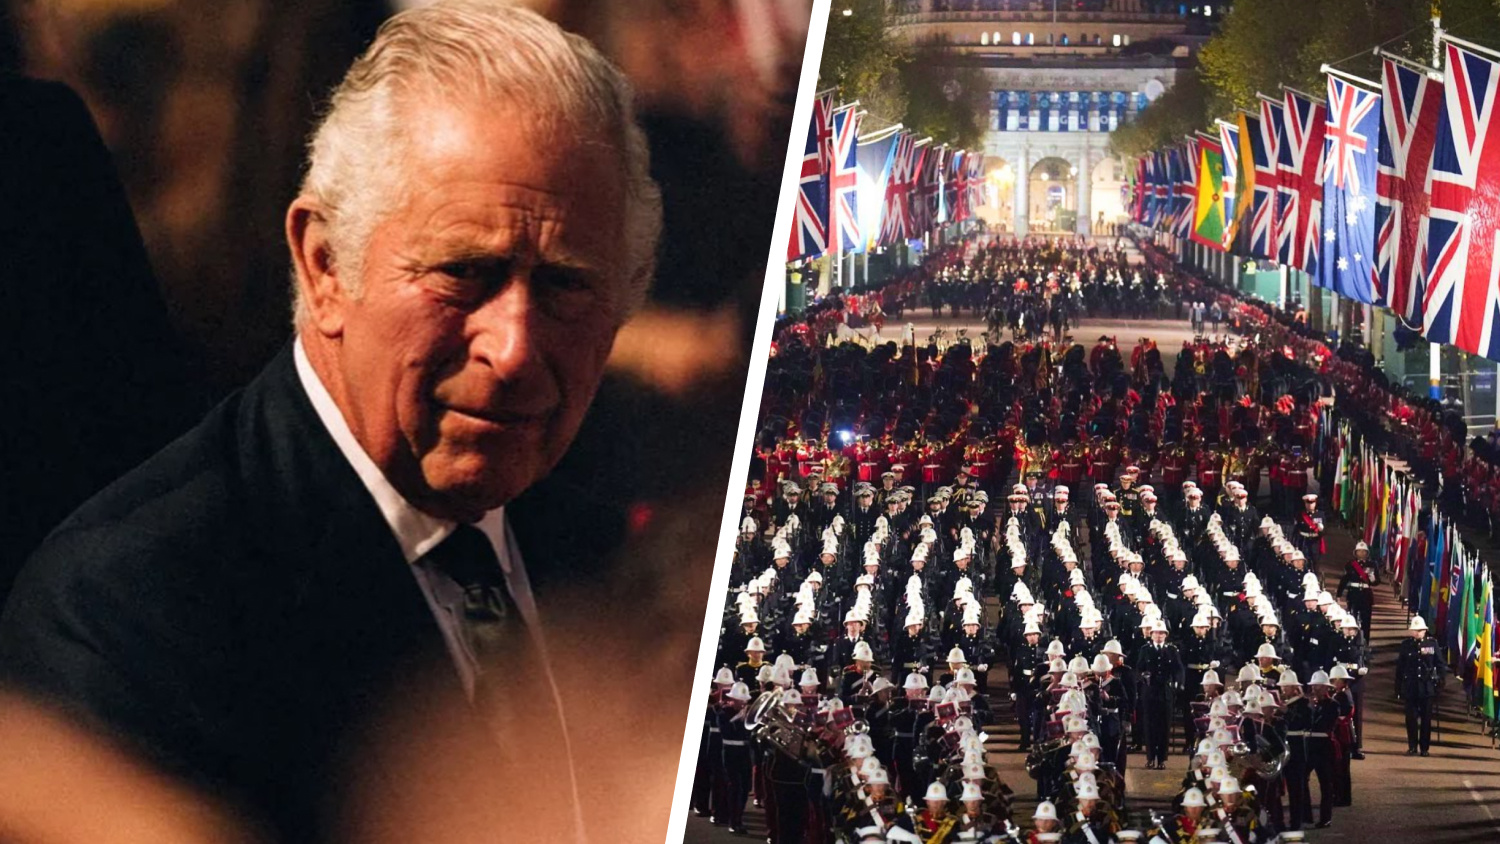 <nobr class="_">2-килограммовая</nobr> корона, парад и тысячи людей у Букингемского дворца. В Британии короновали Карла III